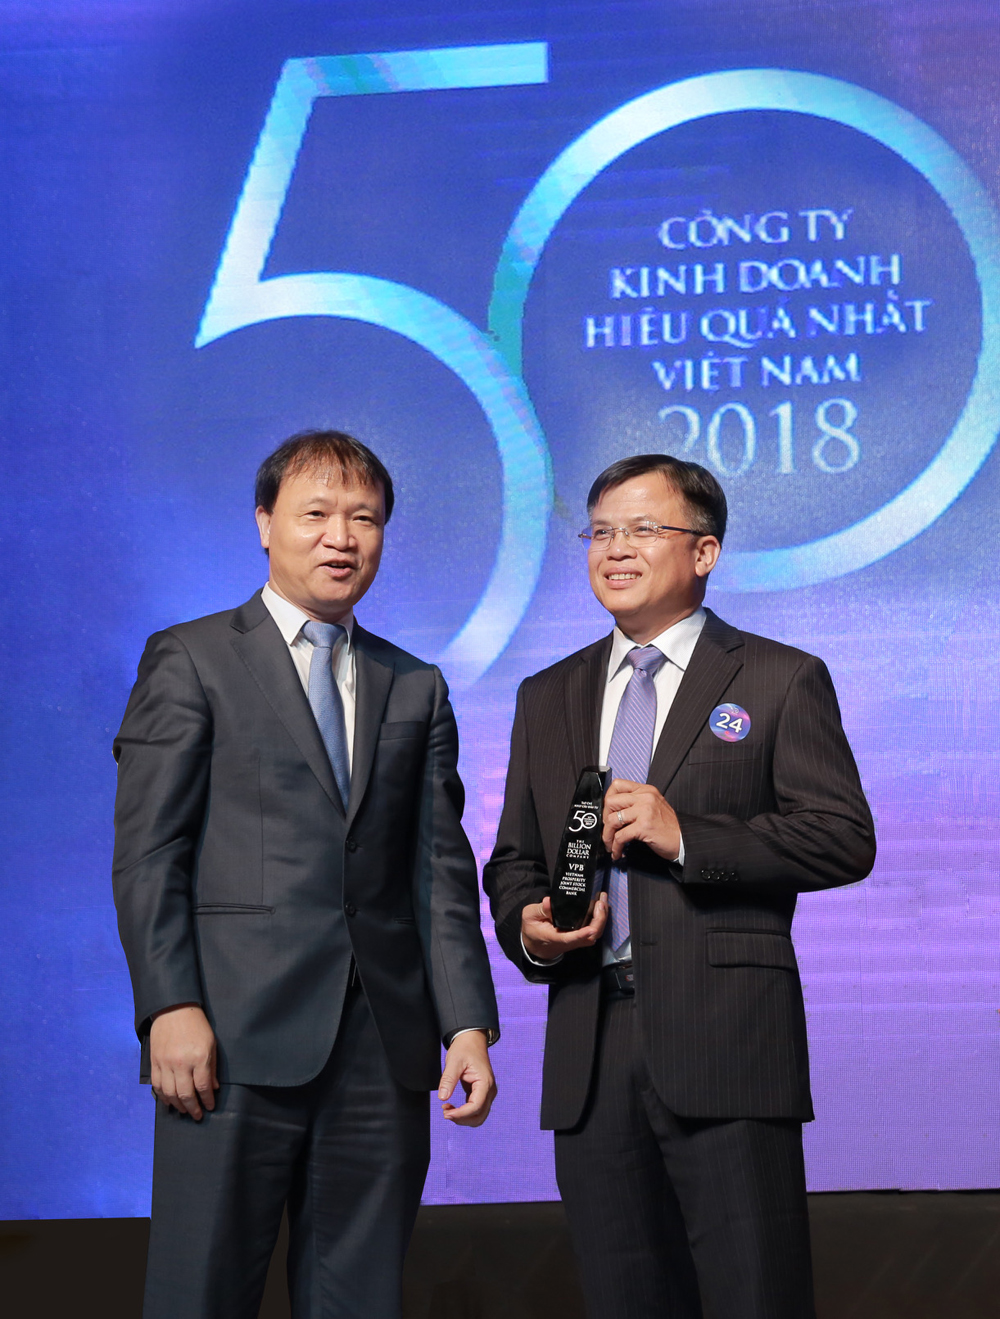 Ông Phan Ngọc Hòa - Phó TGĐ VPBank nhận giải thưởng 50 công ty kinh doanh hiệu quả nhất Việt Nam năm 2018